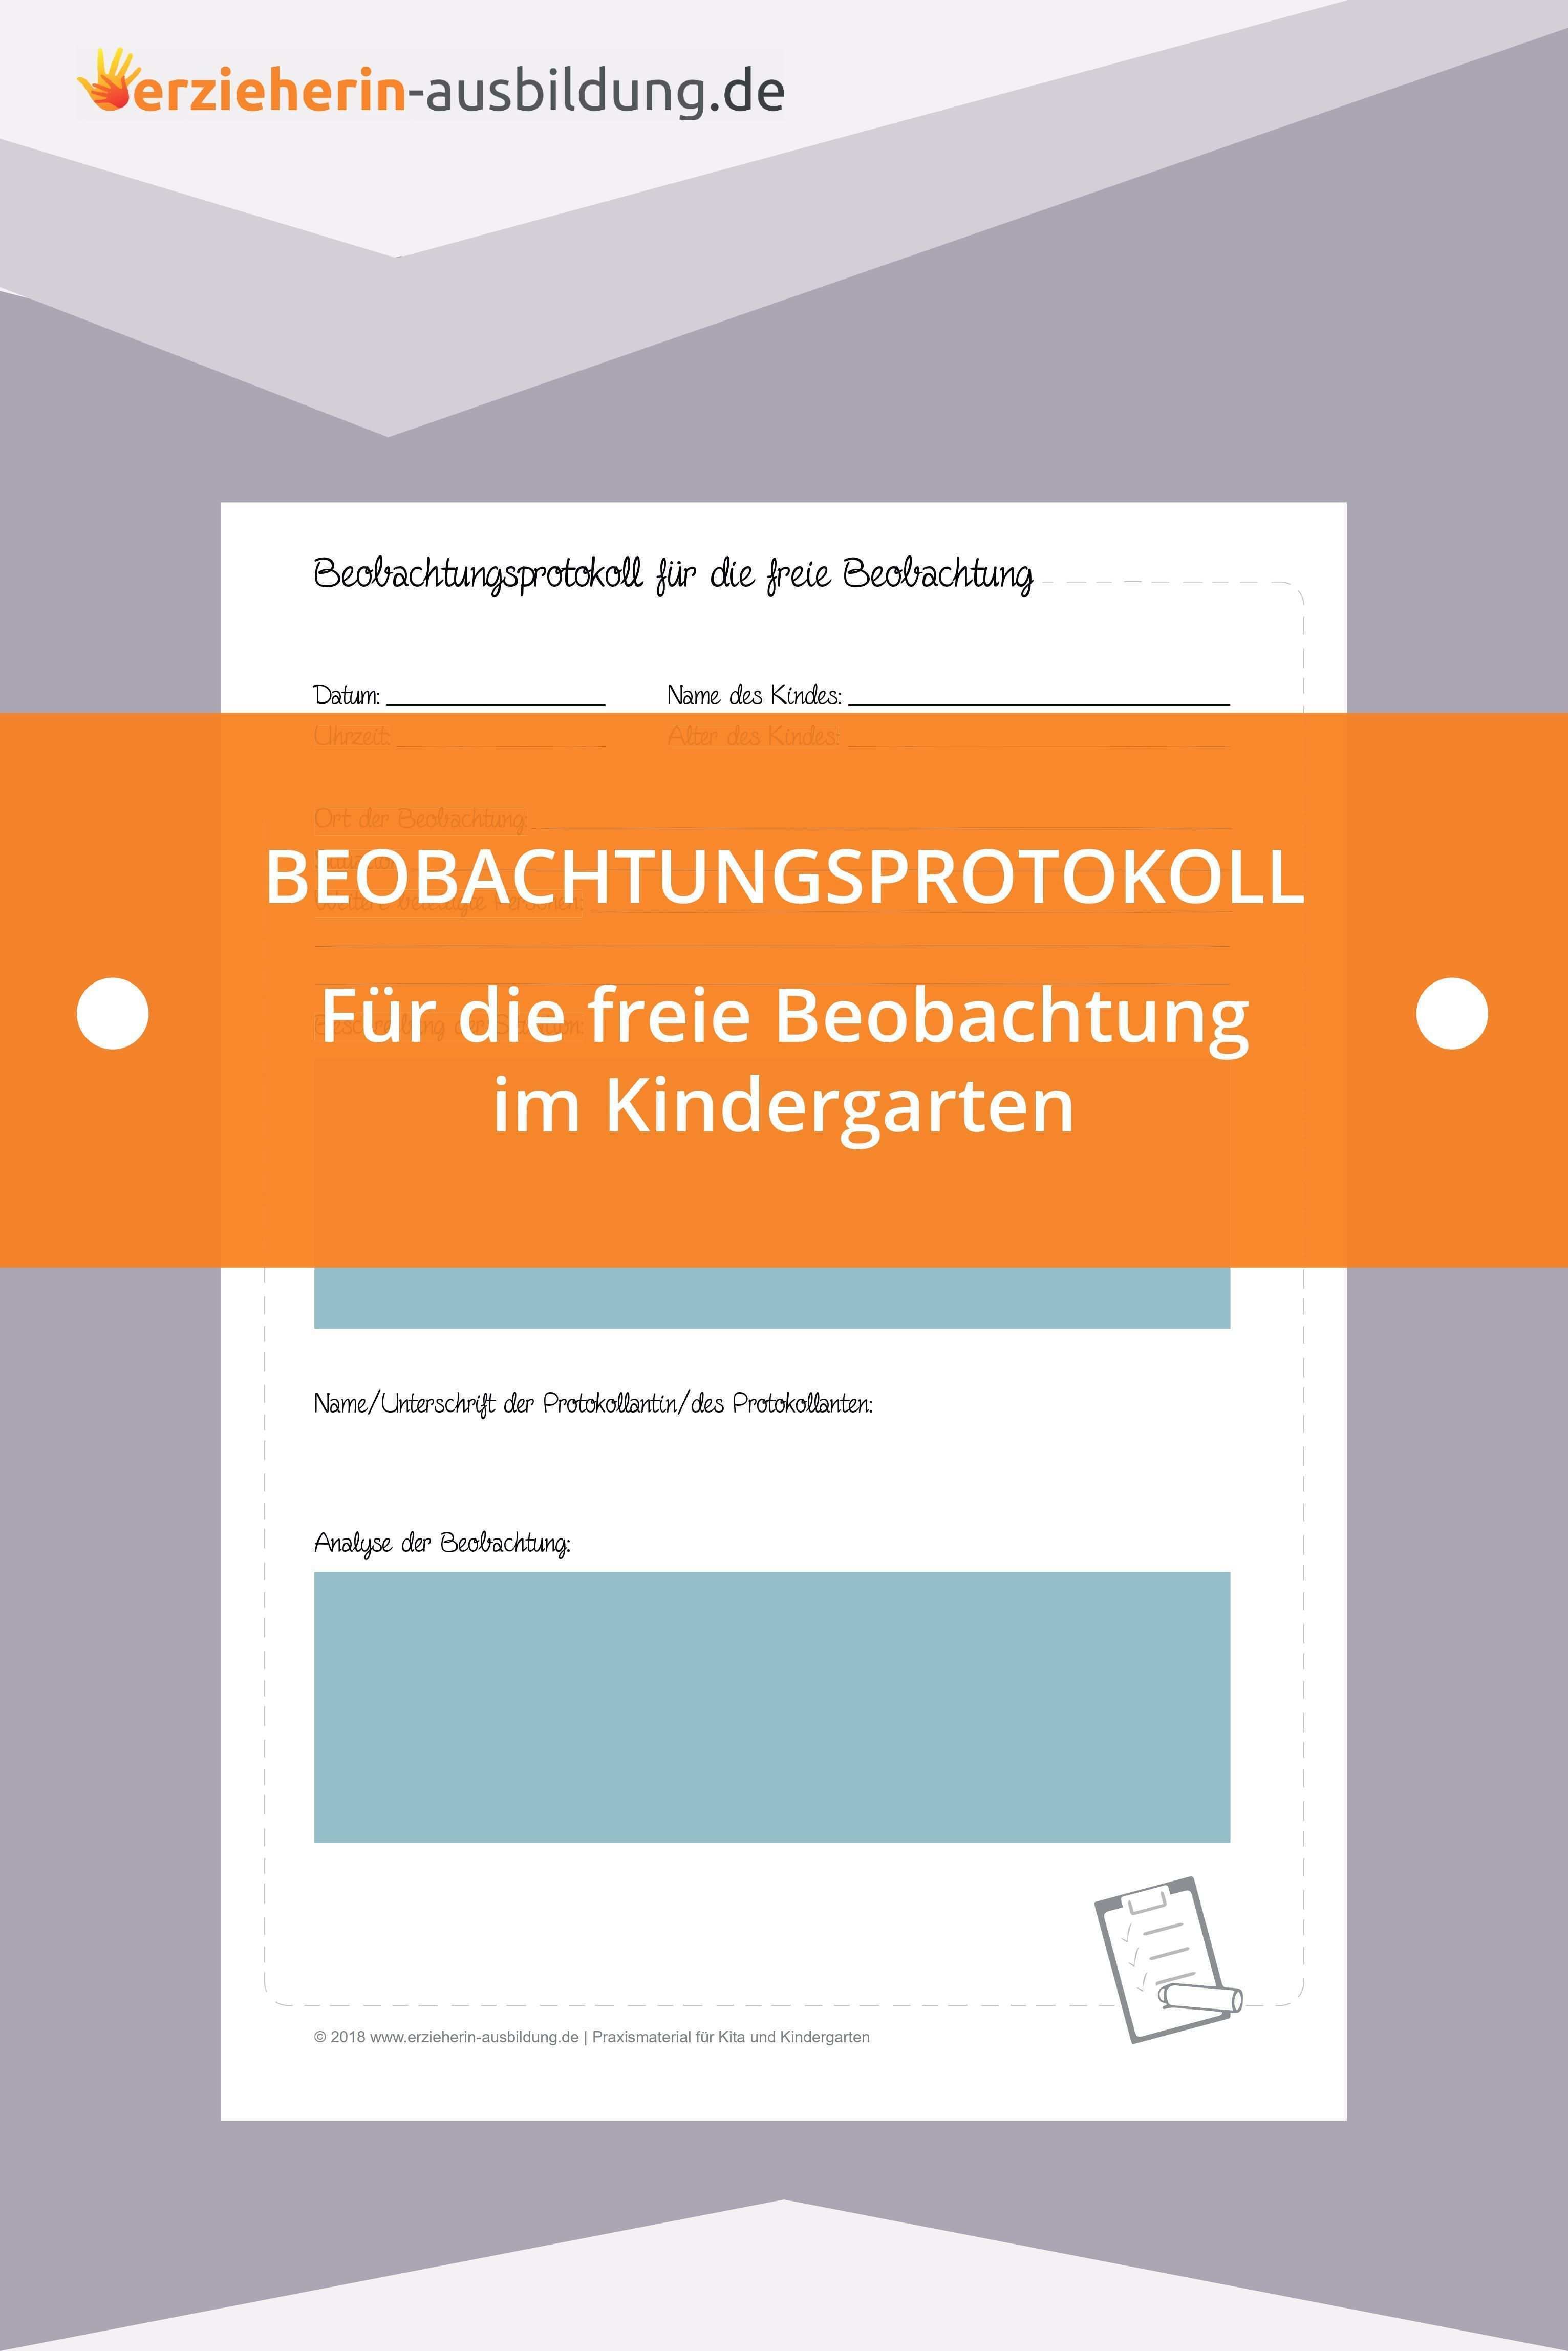 Die Freie Beobachtung Merkmale Tipps Und Haufige Fehler Soziales Lernen Erzieherausbildung Kindergarten